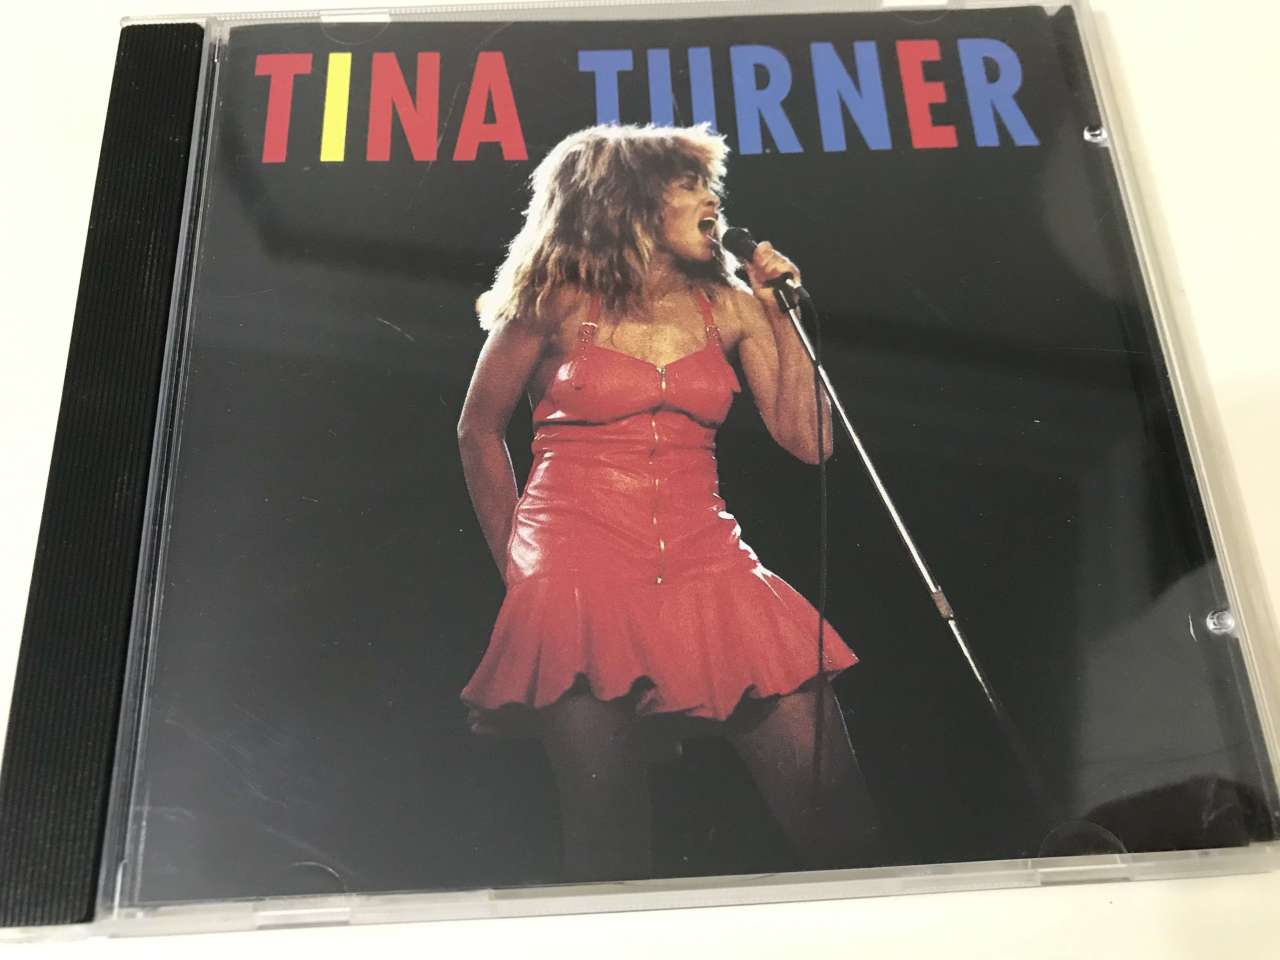 Tina Turner – Tina Turner